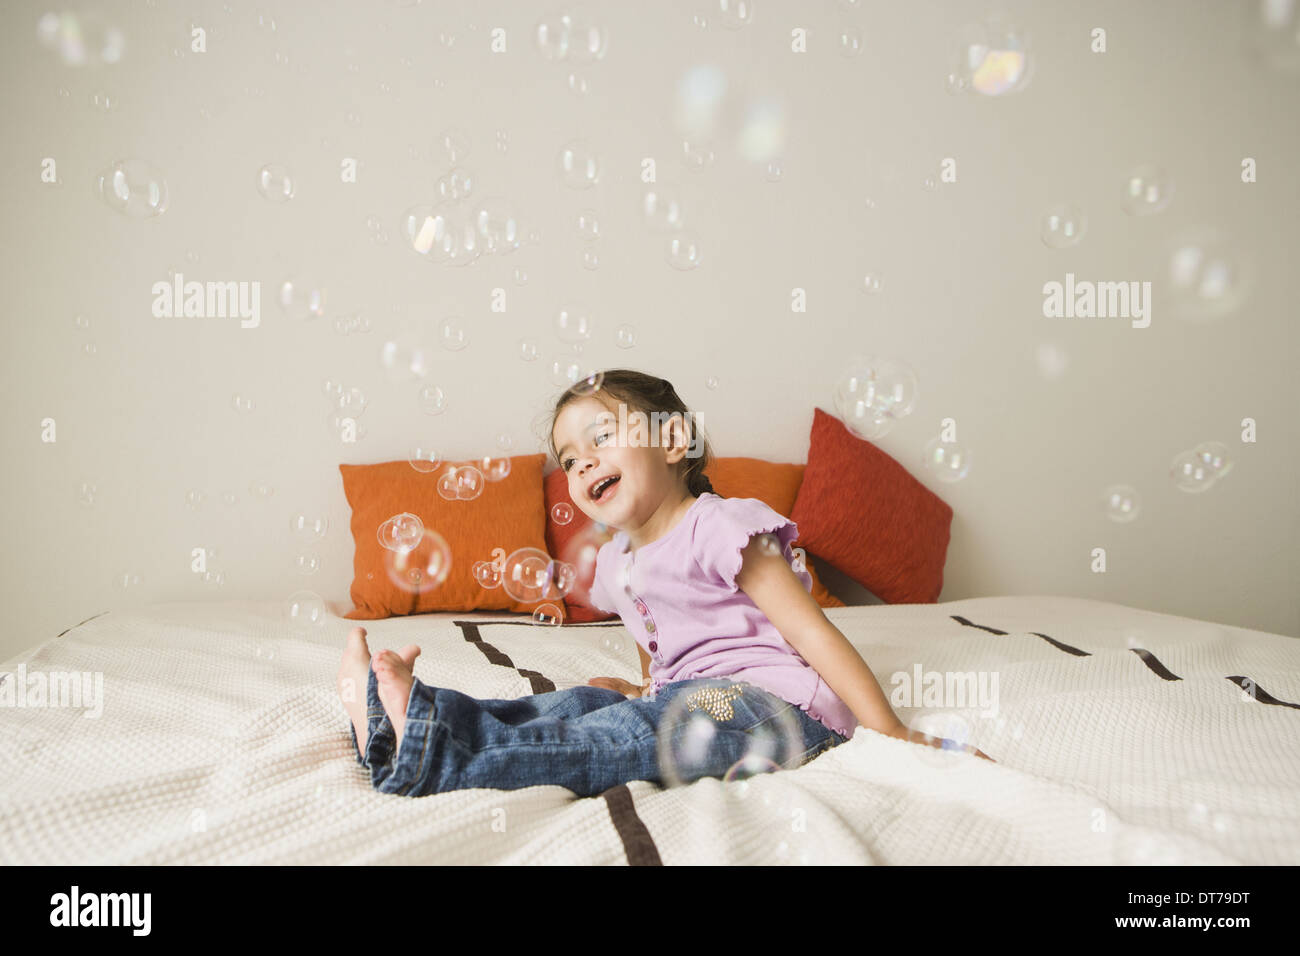 Ein junges Mädchen mit braunen Augen und dunklen Haaren in Trauben sitzen auf einem Bett vor Lachen. Seifenblasen in der Luft. Stockfoto